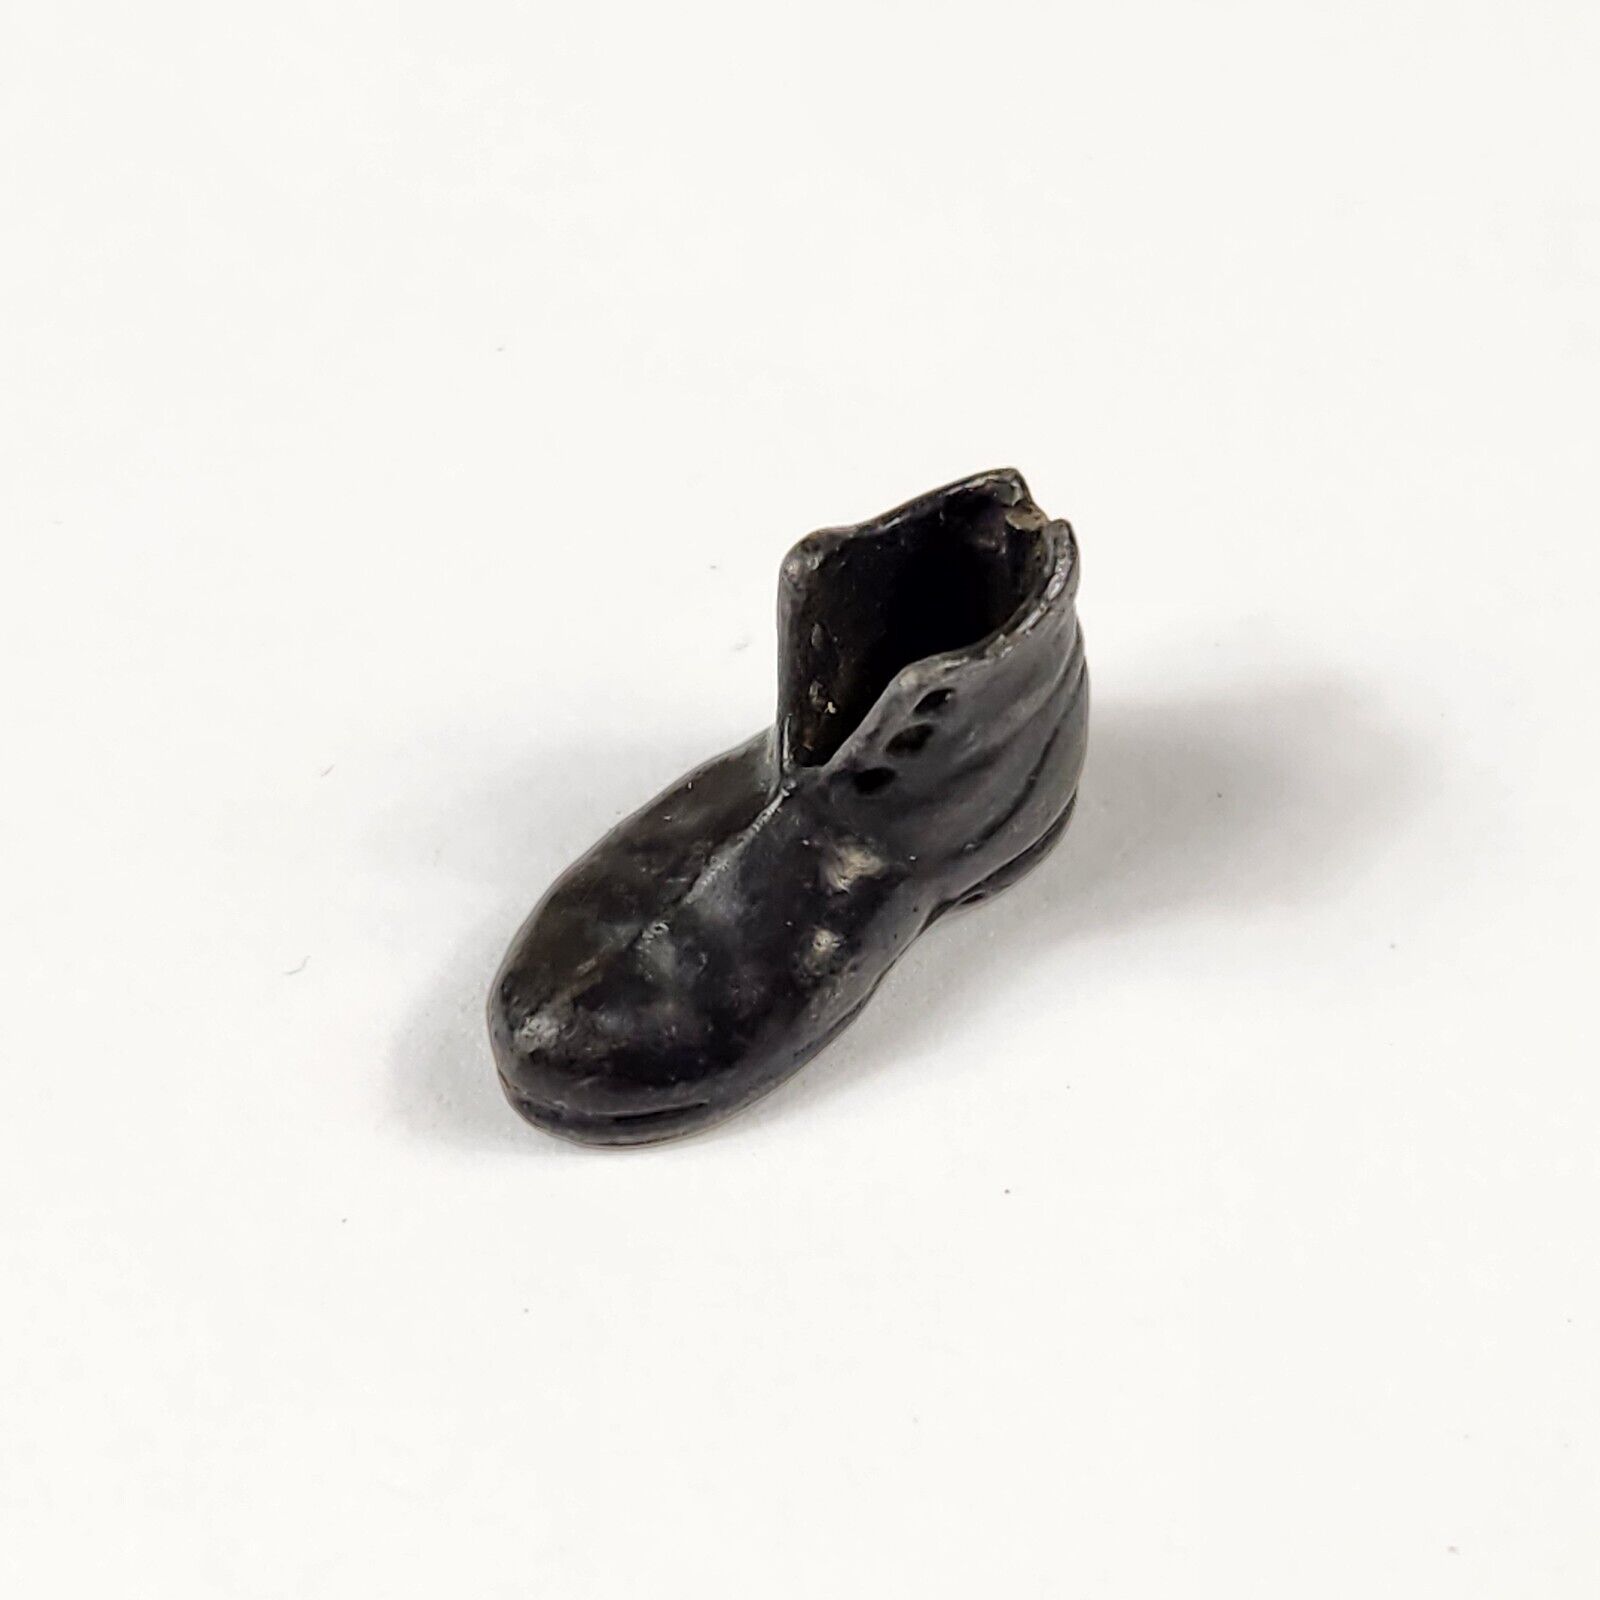 Pingree Shoe Company Detroit MI Necklace Bracelet Charm Keychain Vintage Antique